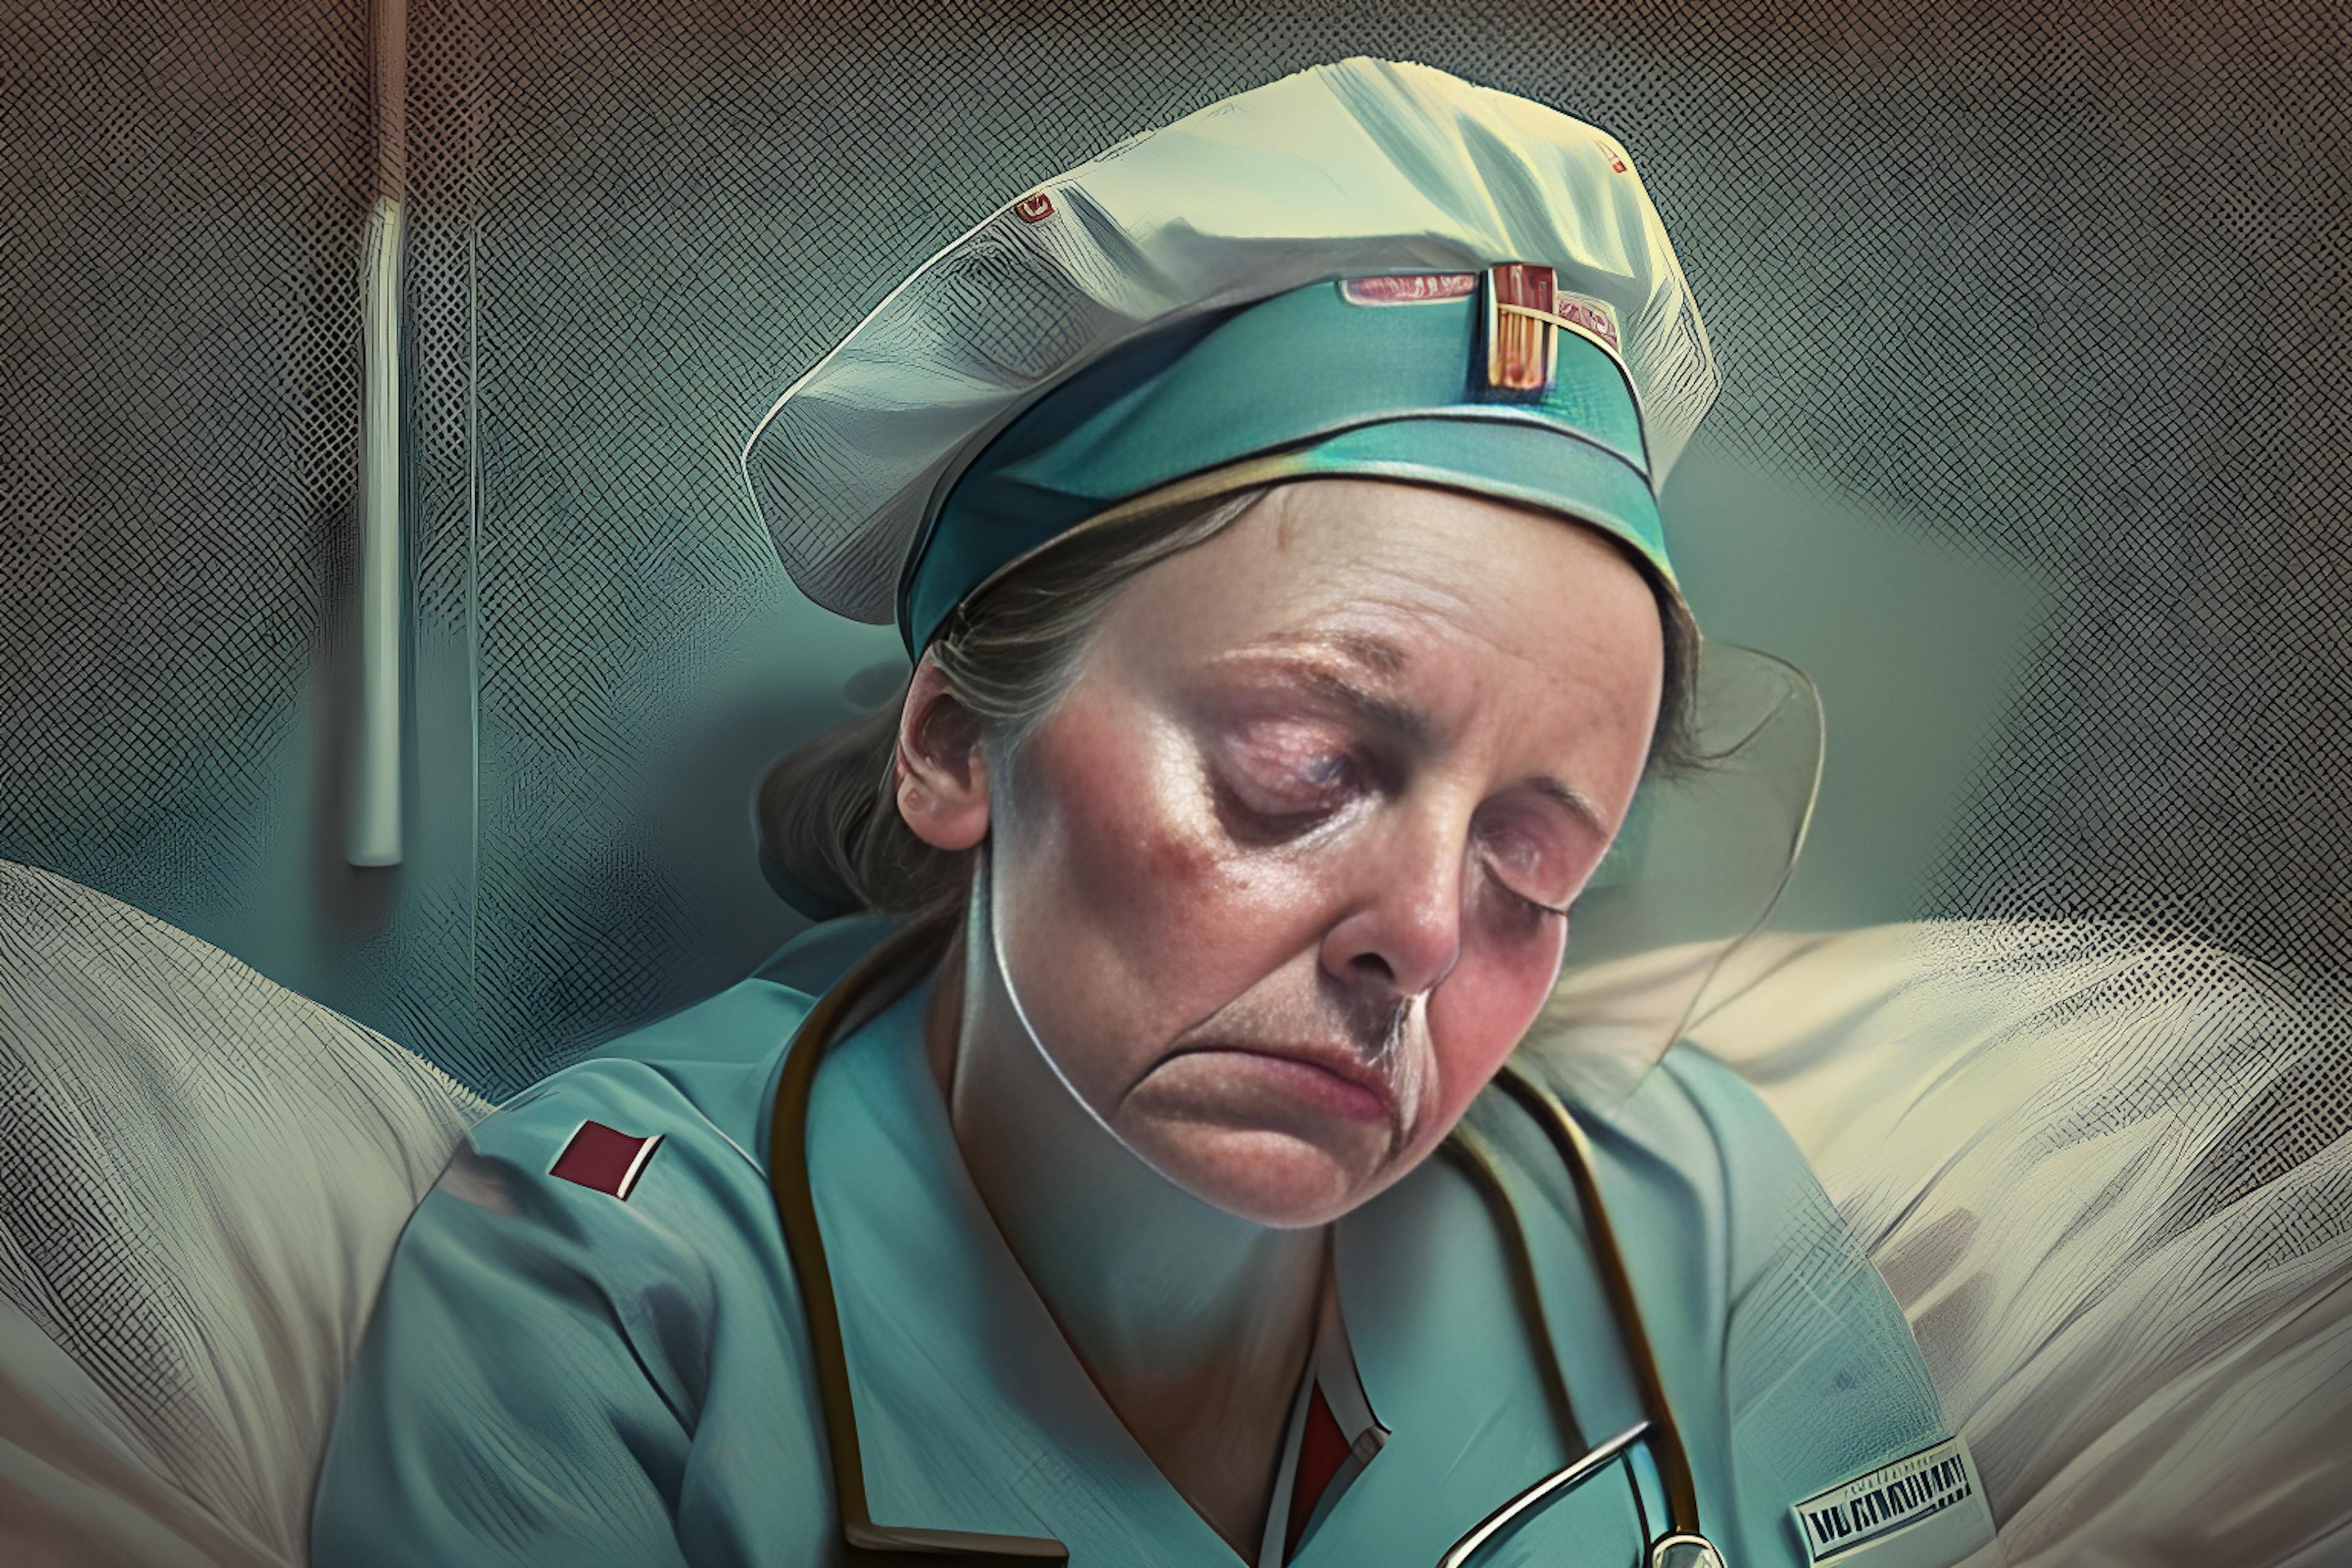 Esta imagen fue generada por AI Image Generator de HackerNoon a través del mensaje "una enfermera cansada".